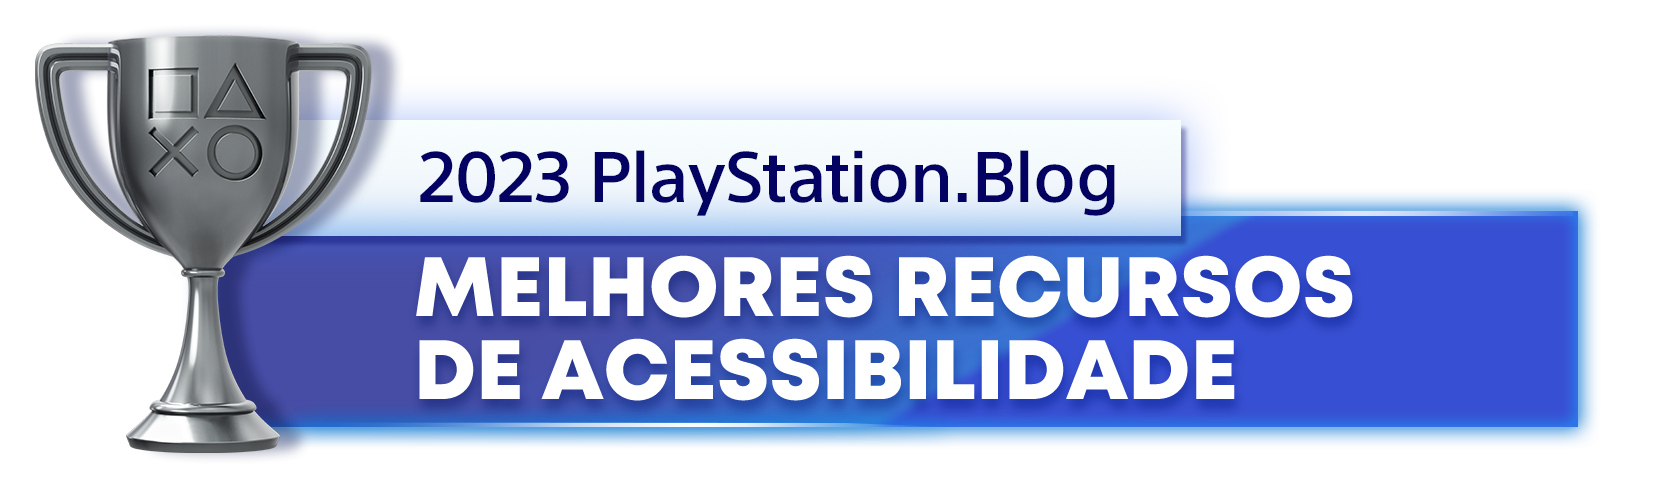  "Troféu de Prata para o vencedor da categoria Melhores Recursos de Acessibilidade de 2023 do PlayStation Blog"